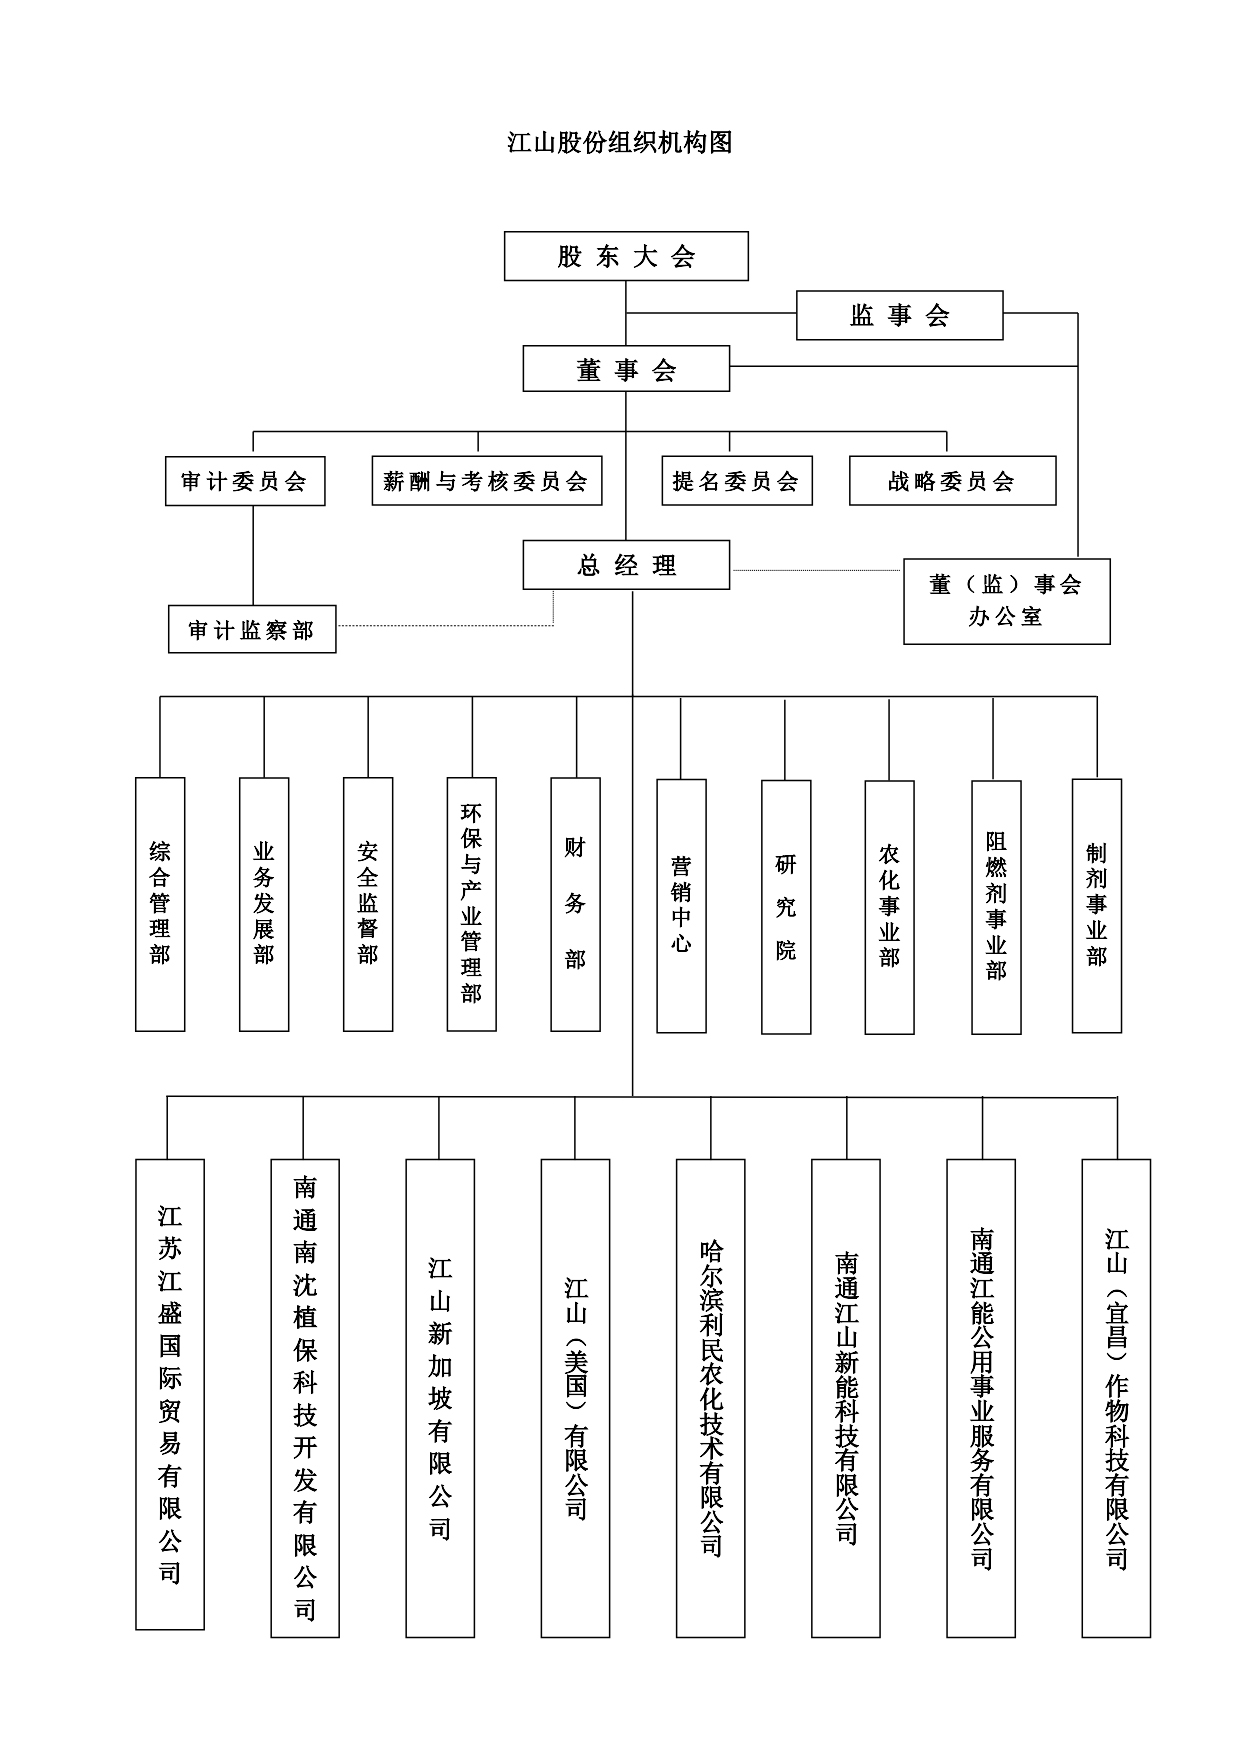 江山股份组织机构图2023_1